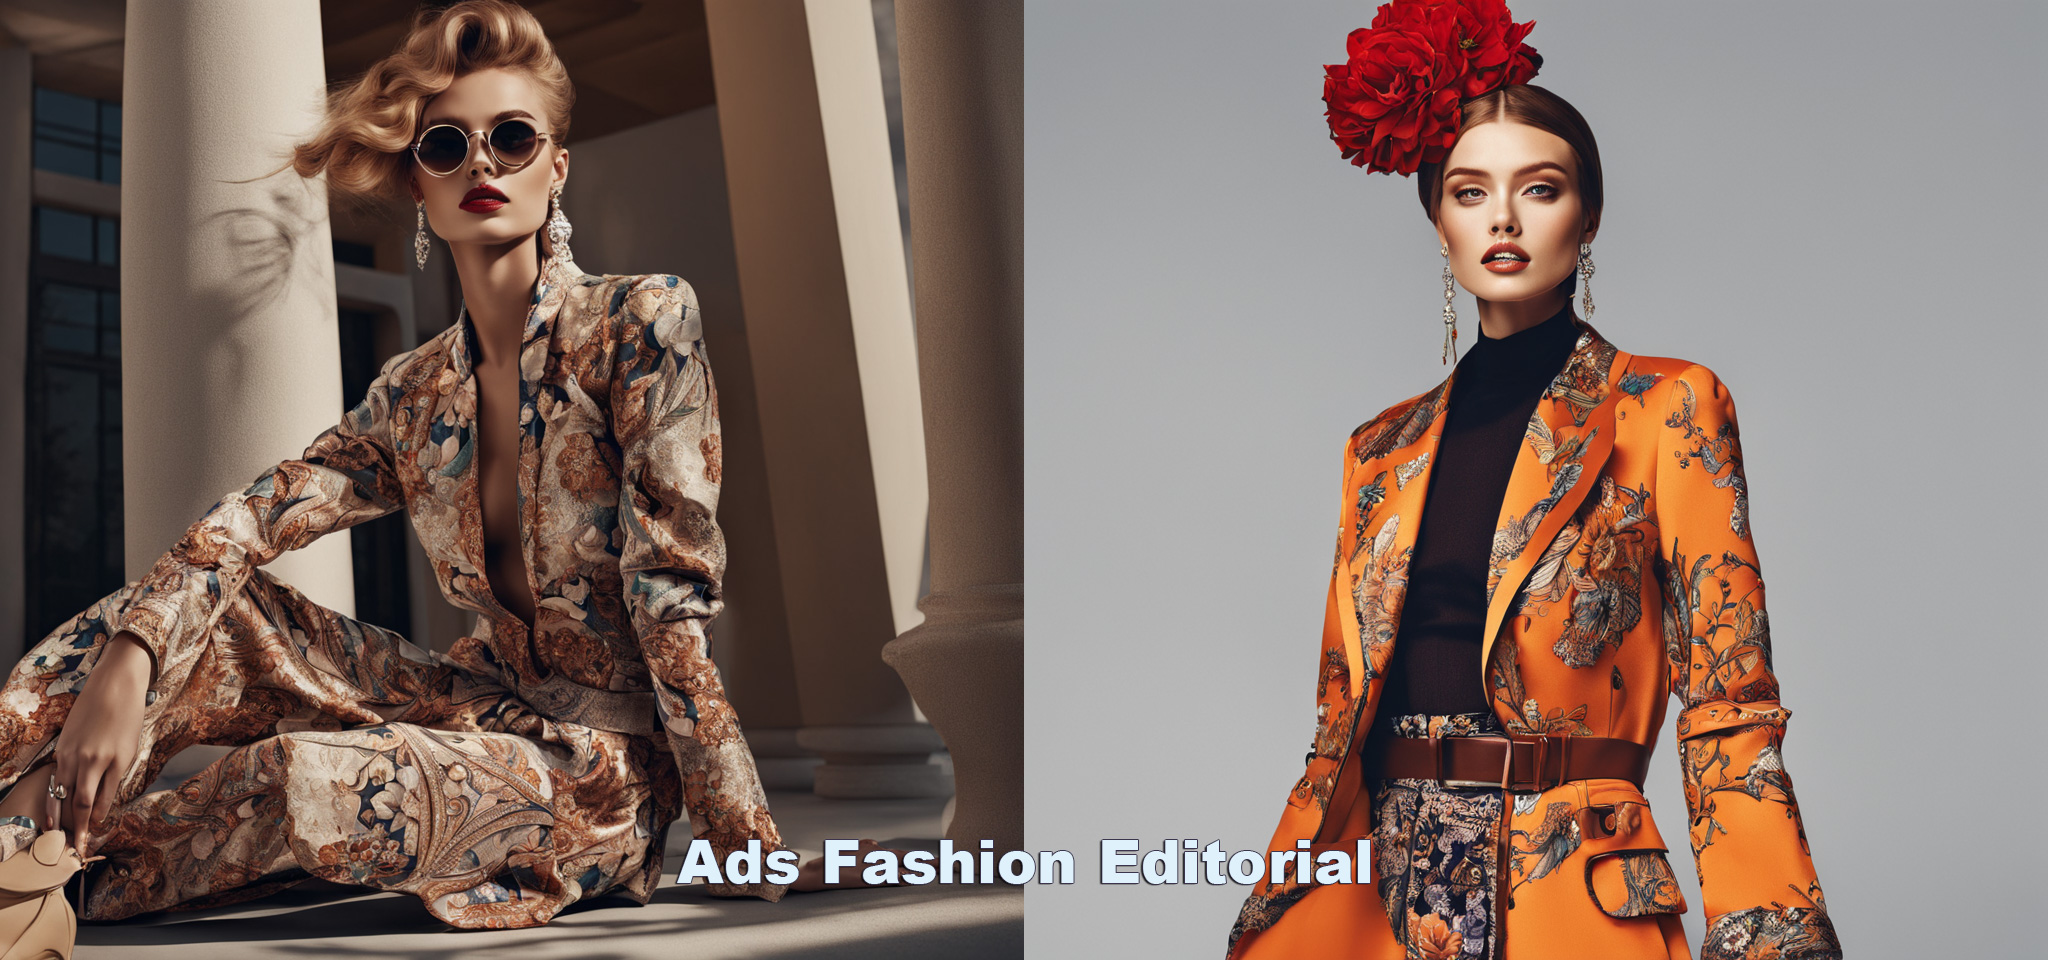 Fooocus风格之Ads Fashion Editorial